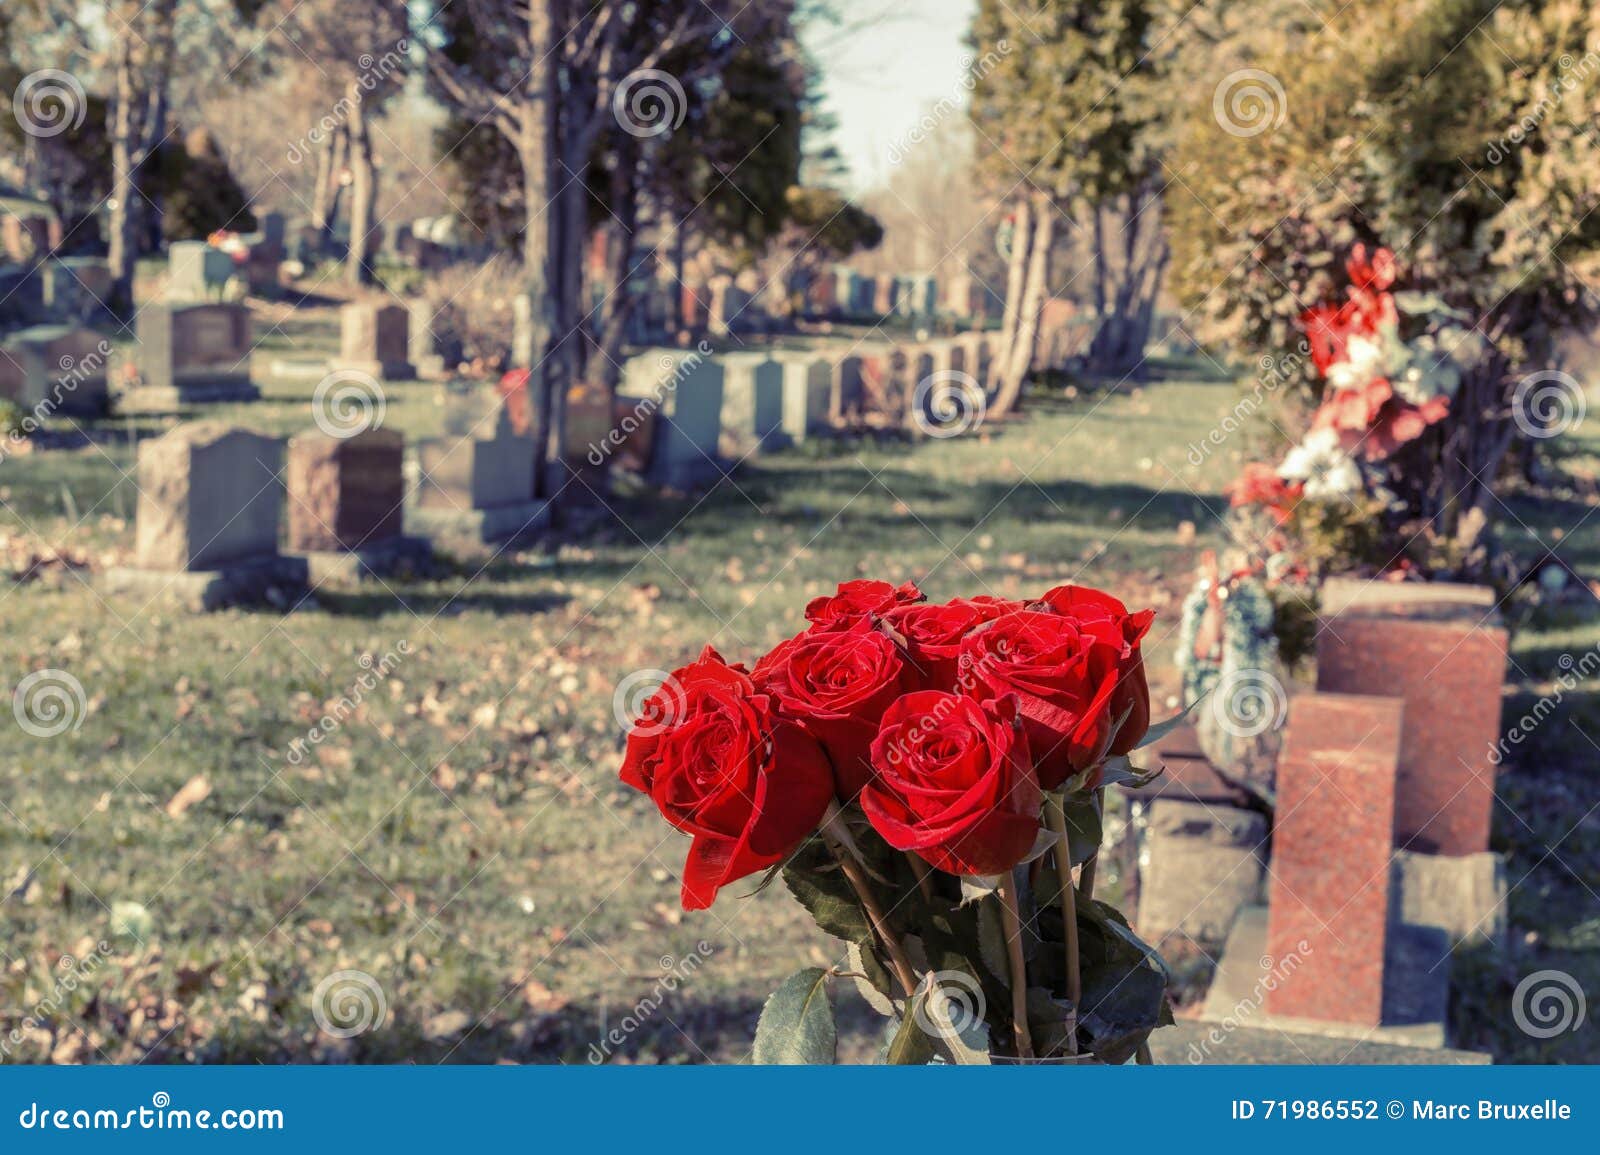 Металлические цветы на кладбище. Розы на кладбище. Букет роз на кладбище. Искусственные розы на кладбище.